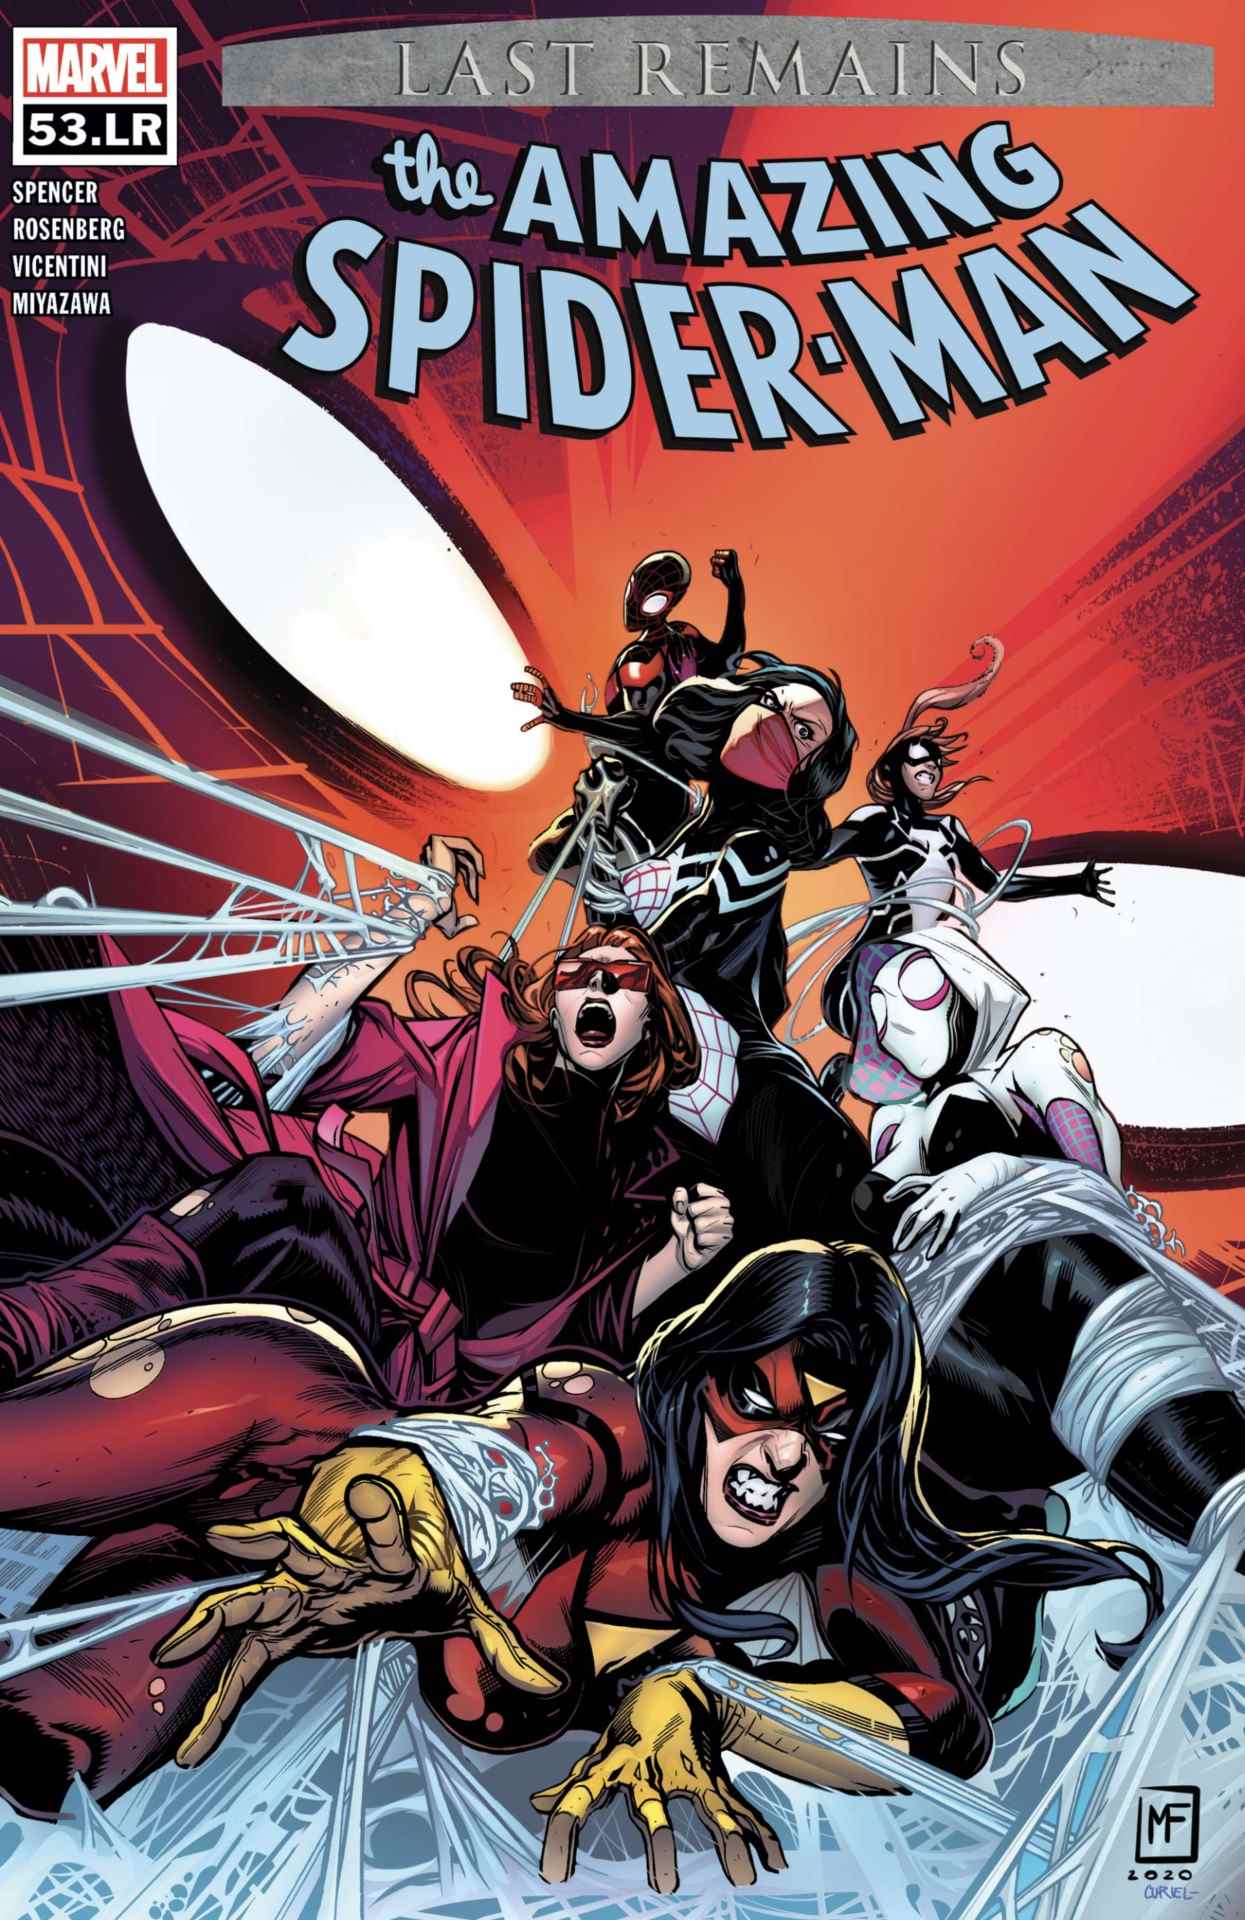 Incroyable couverture de Spider-Man #53.LR